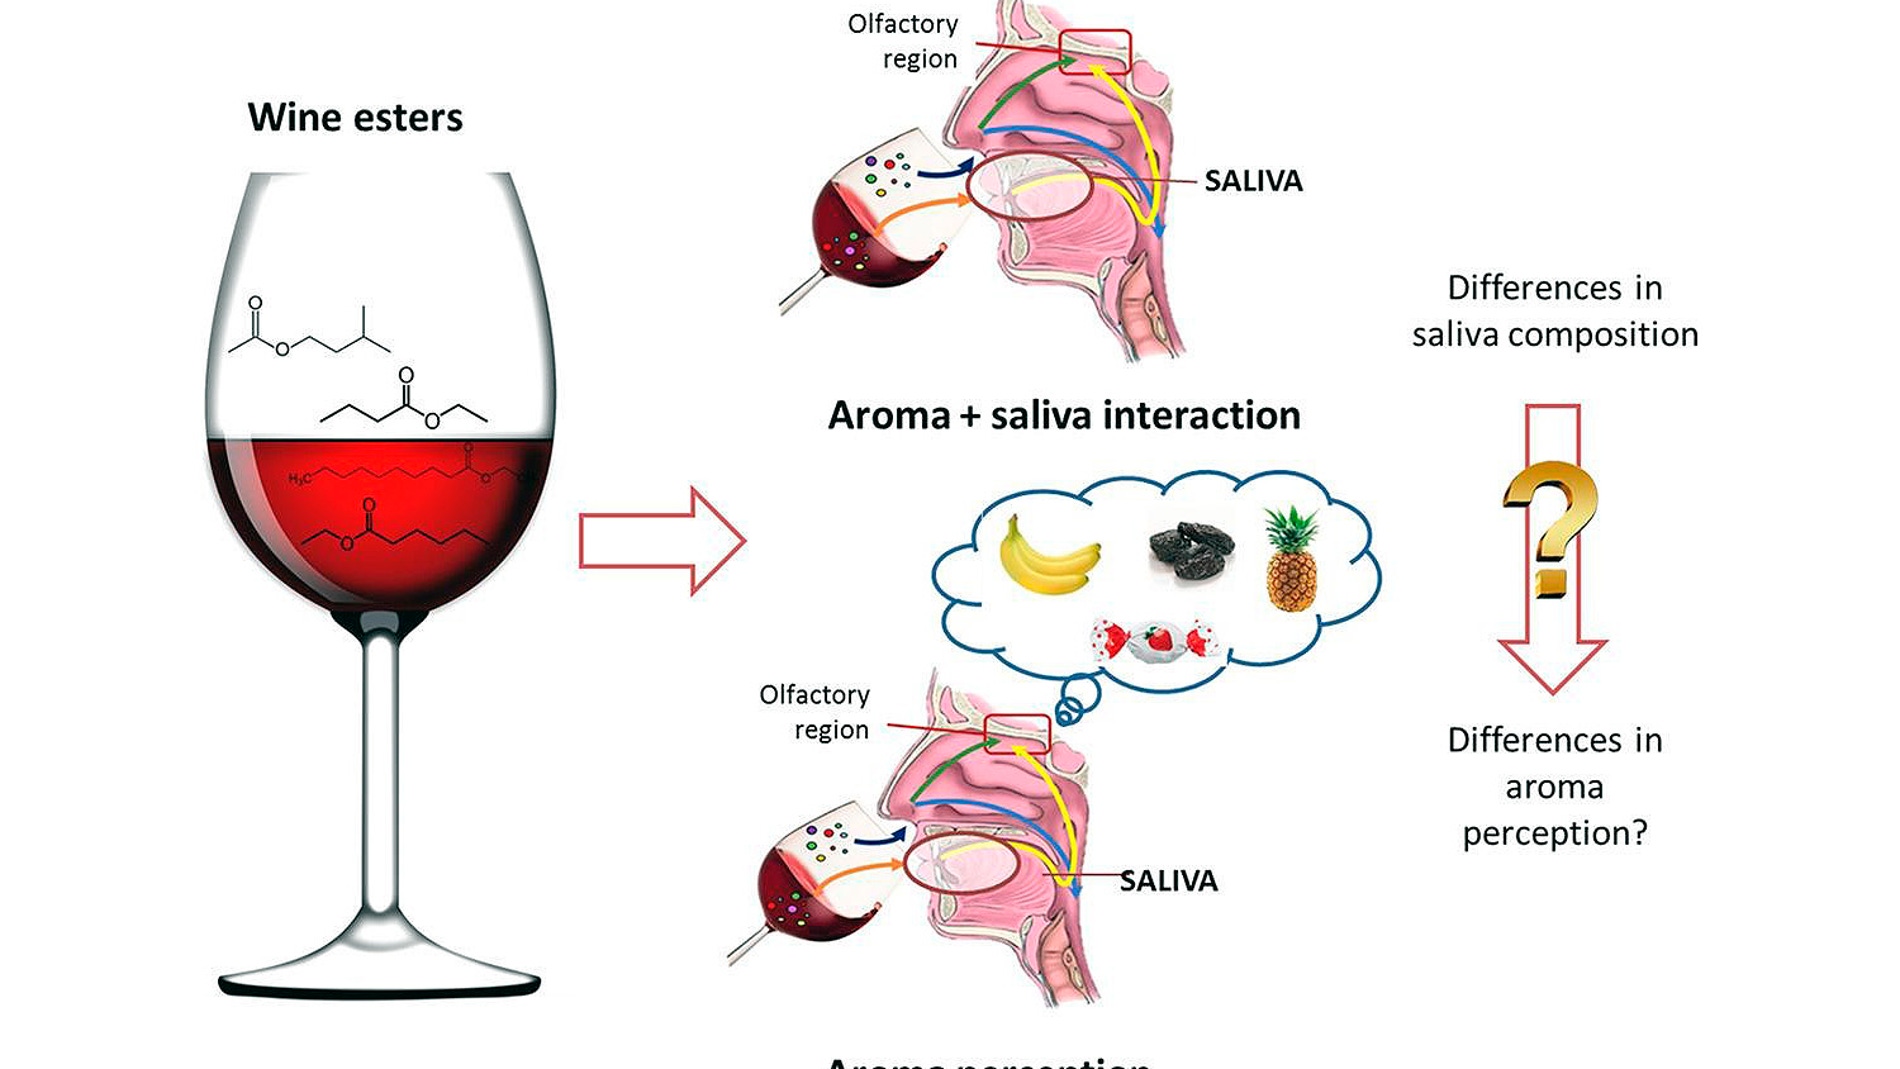 La saliva de cada persona influye en la percepcion del sabor frutal del vino